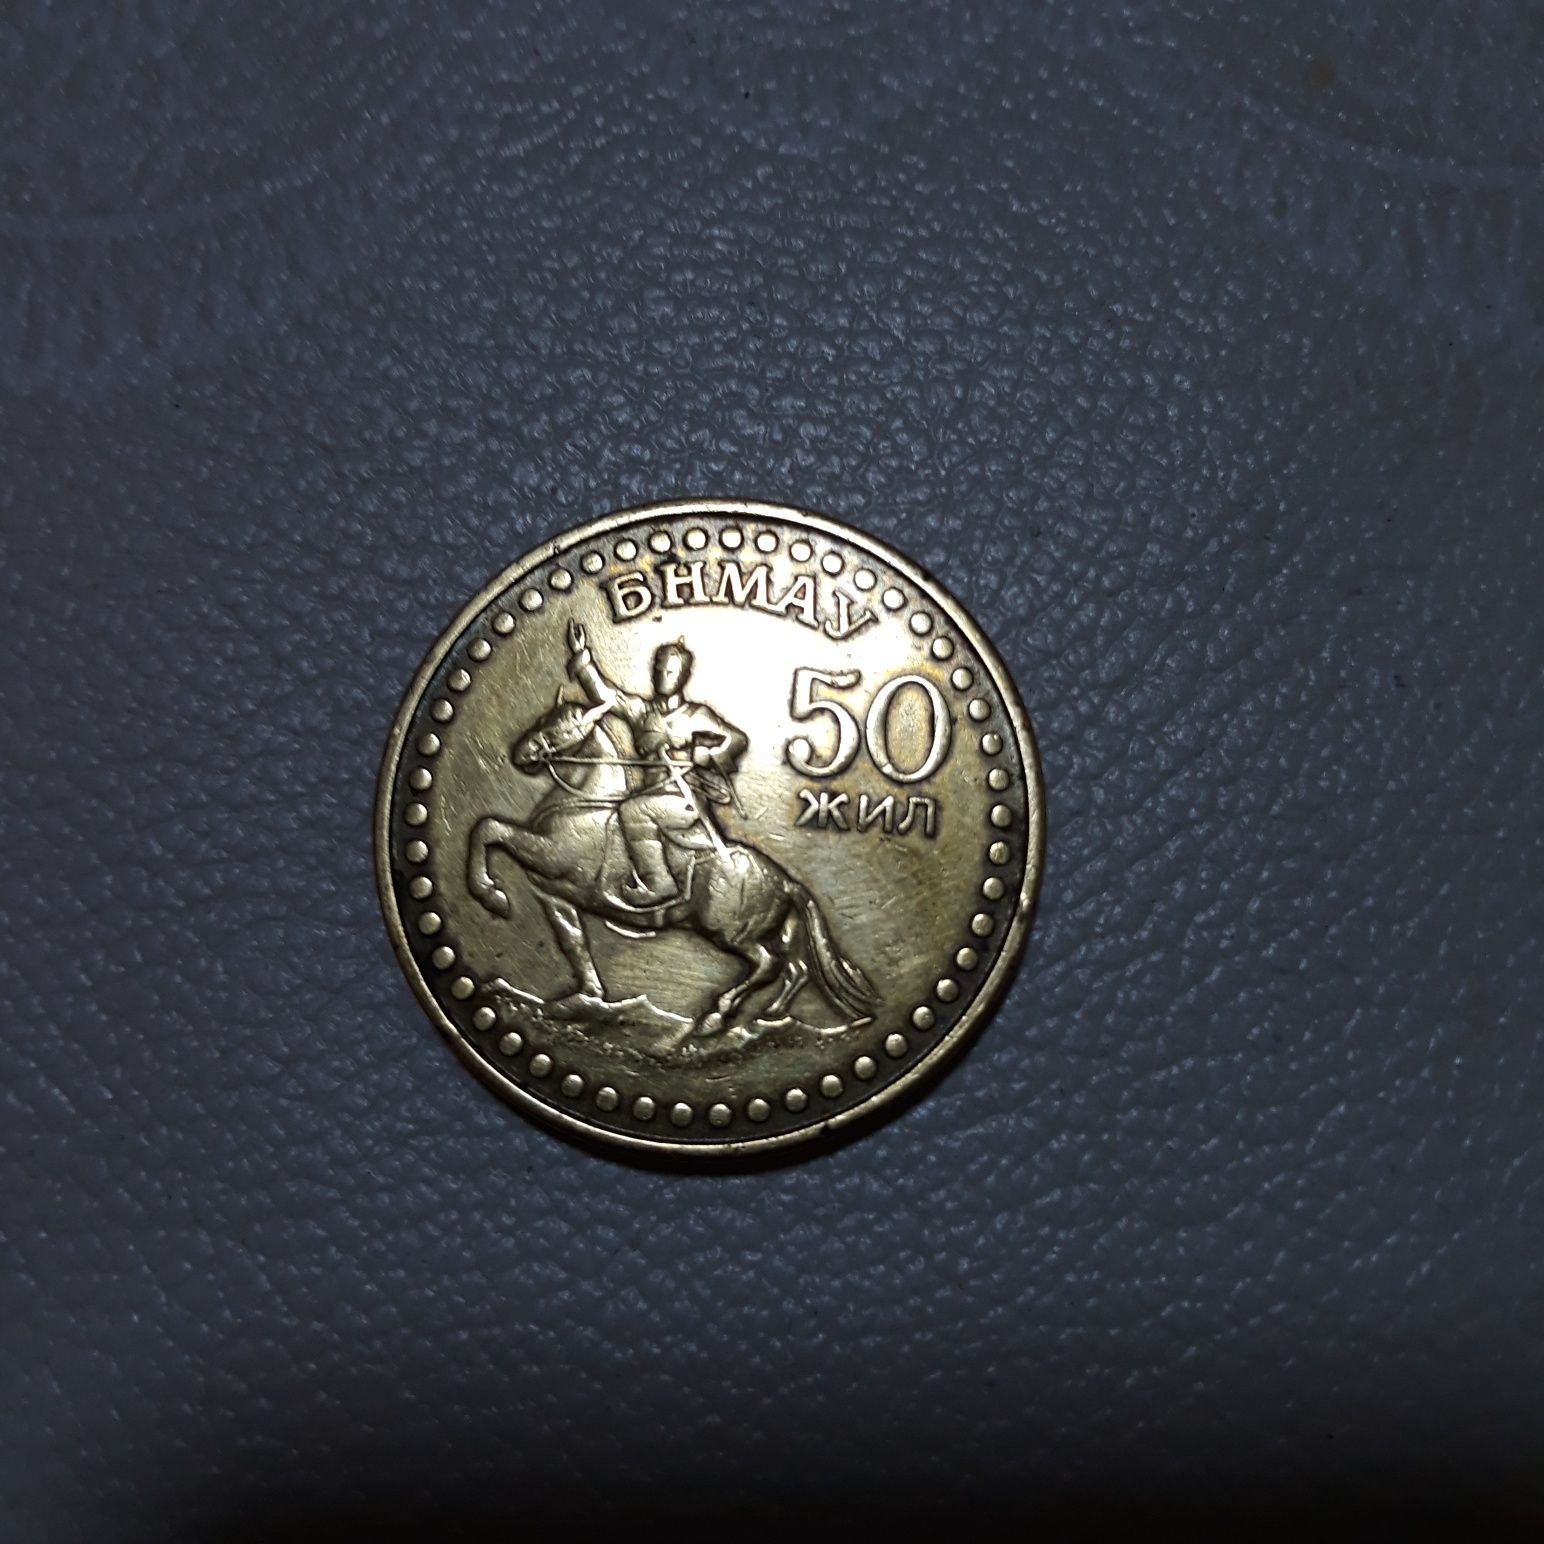 Монета монголии  1971г,50 жил юбилейная  ,состояние хорошее,смотрите ф